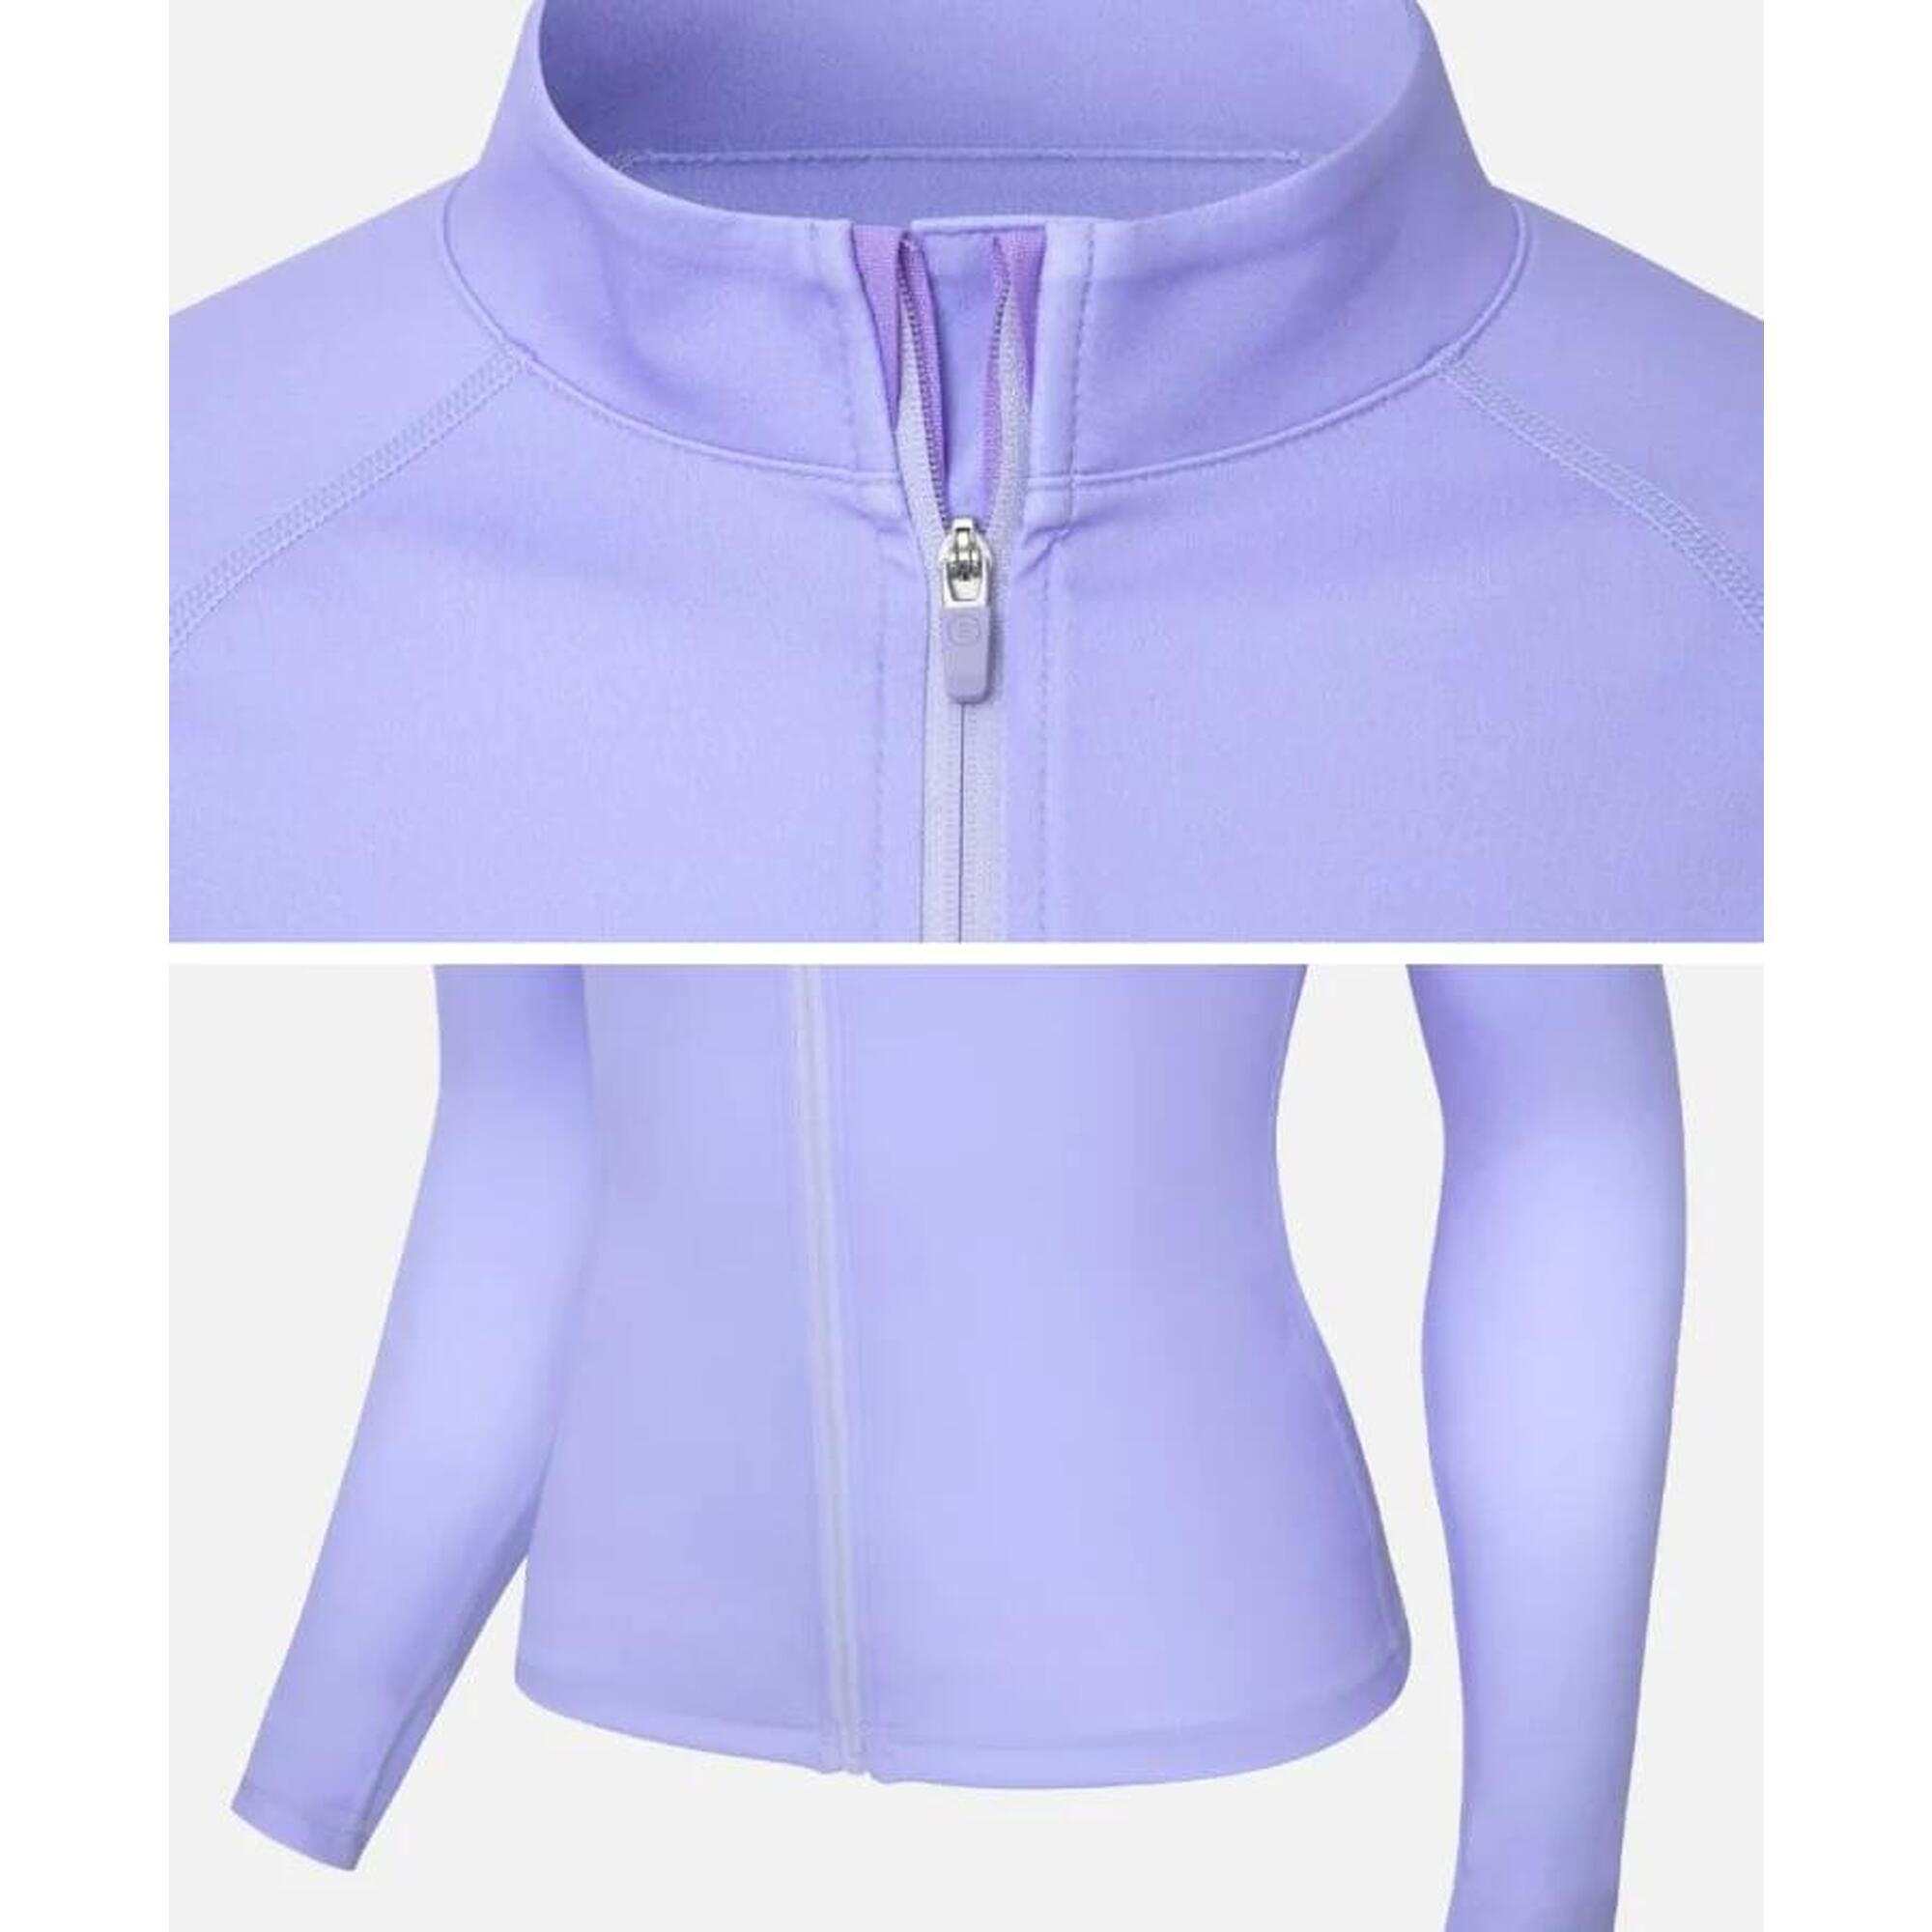 女士基本款拉鏈式防曬衣- 紫色